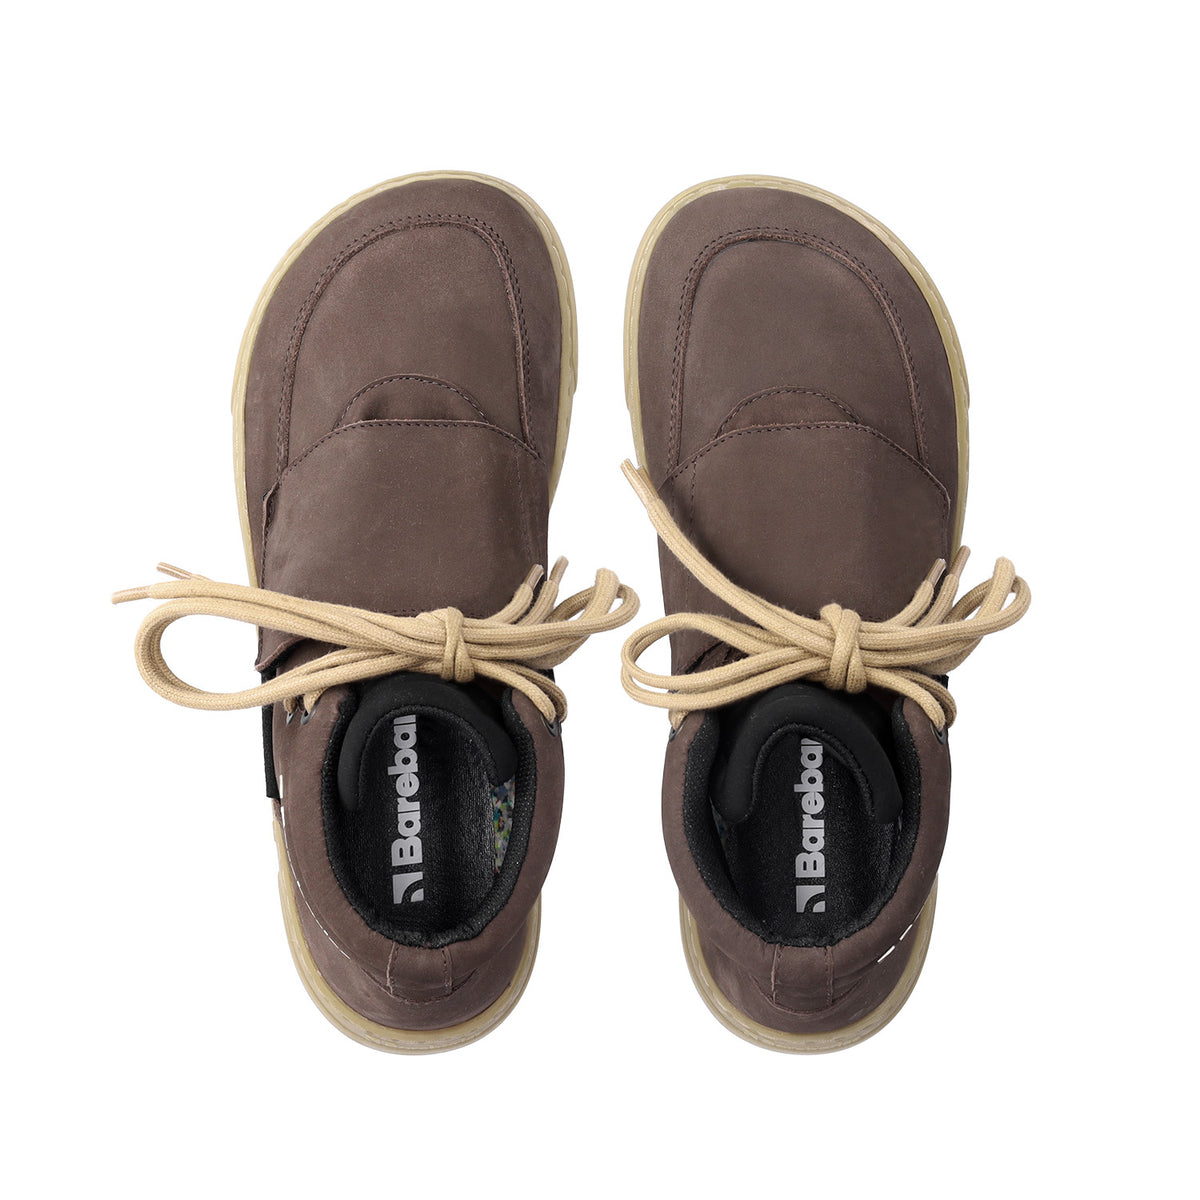 Barefoot Sneakers Barebarics Blizzard - Dark Chocolate Brown 3 OzBarefoot Australia